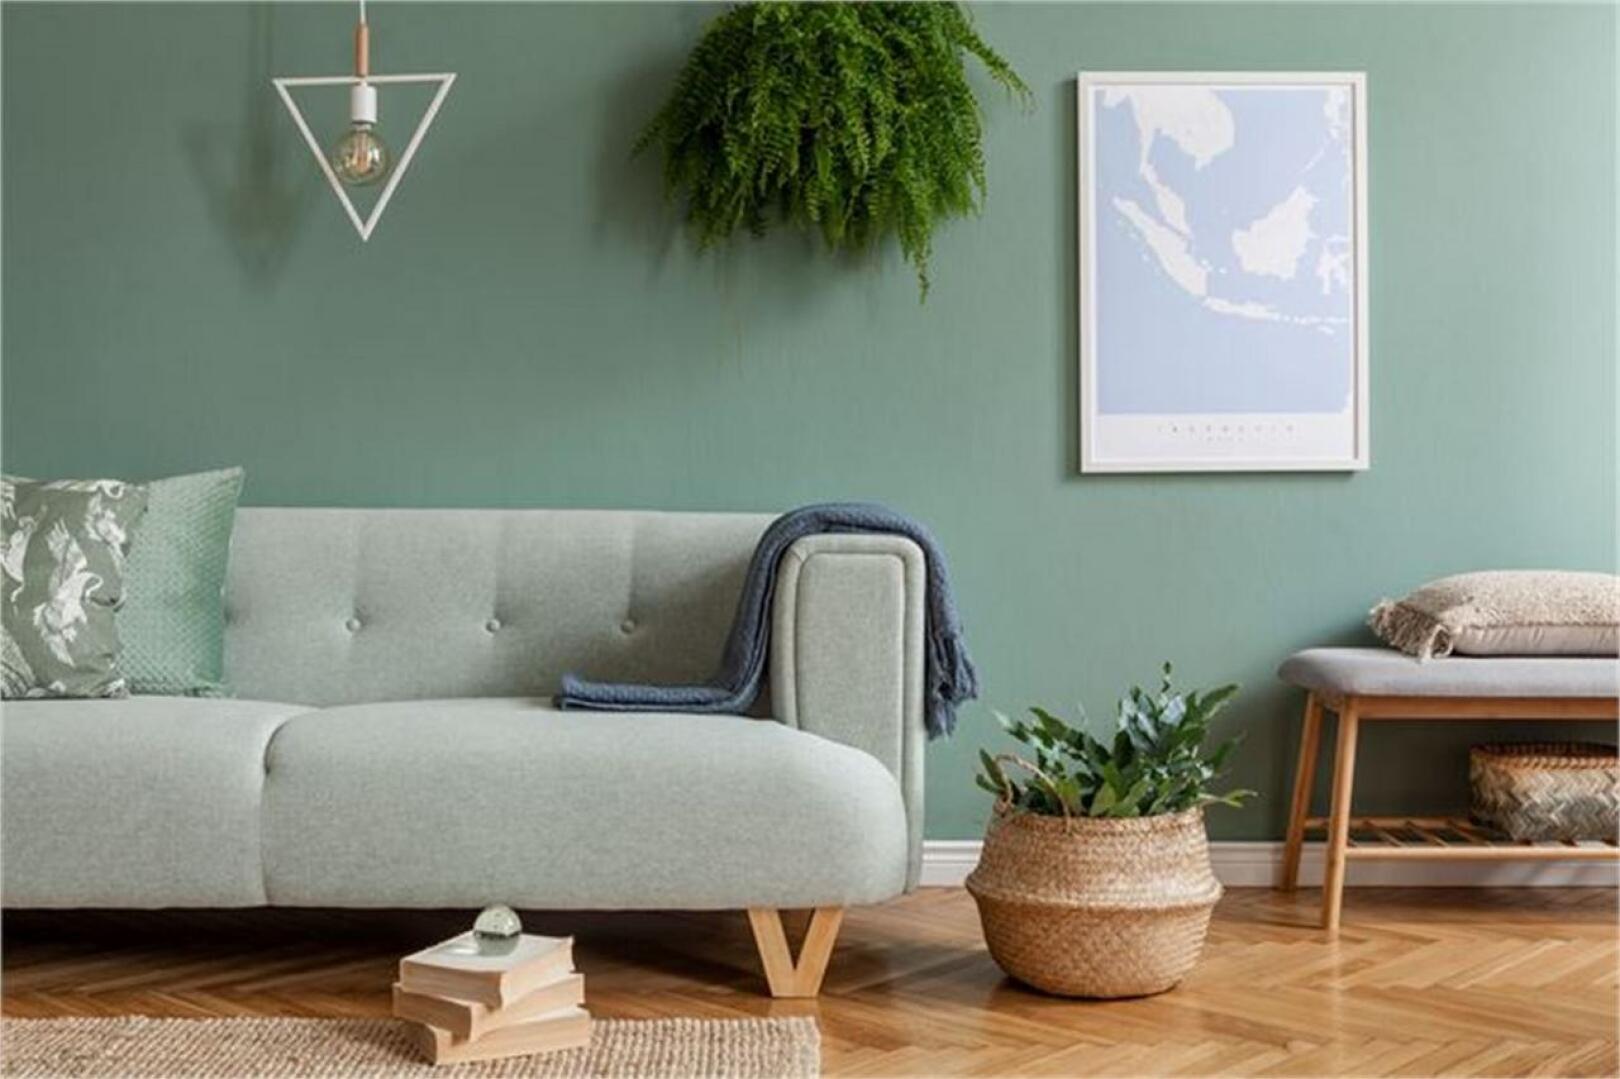 Huonekalut.fi inspiroi löytämään huonekaluja kodin jokaiseen huoneeseen. 